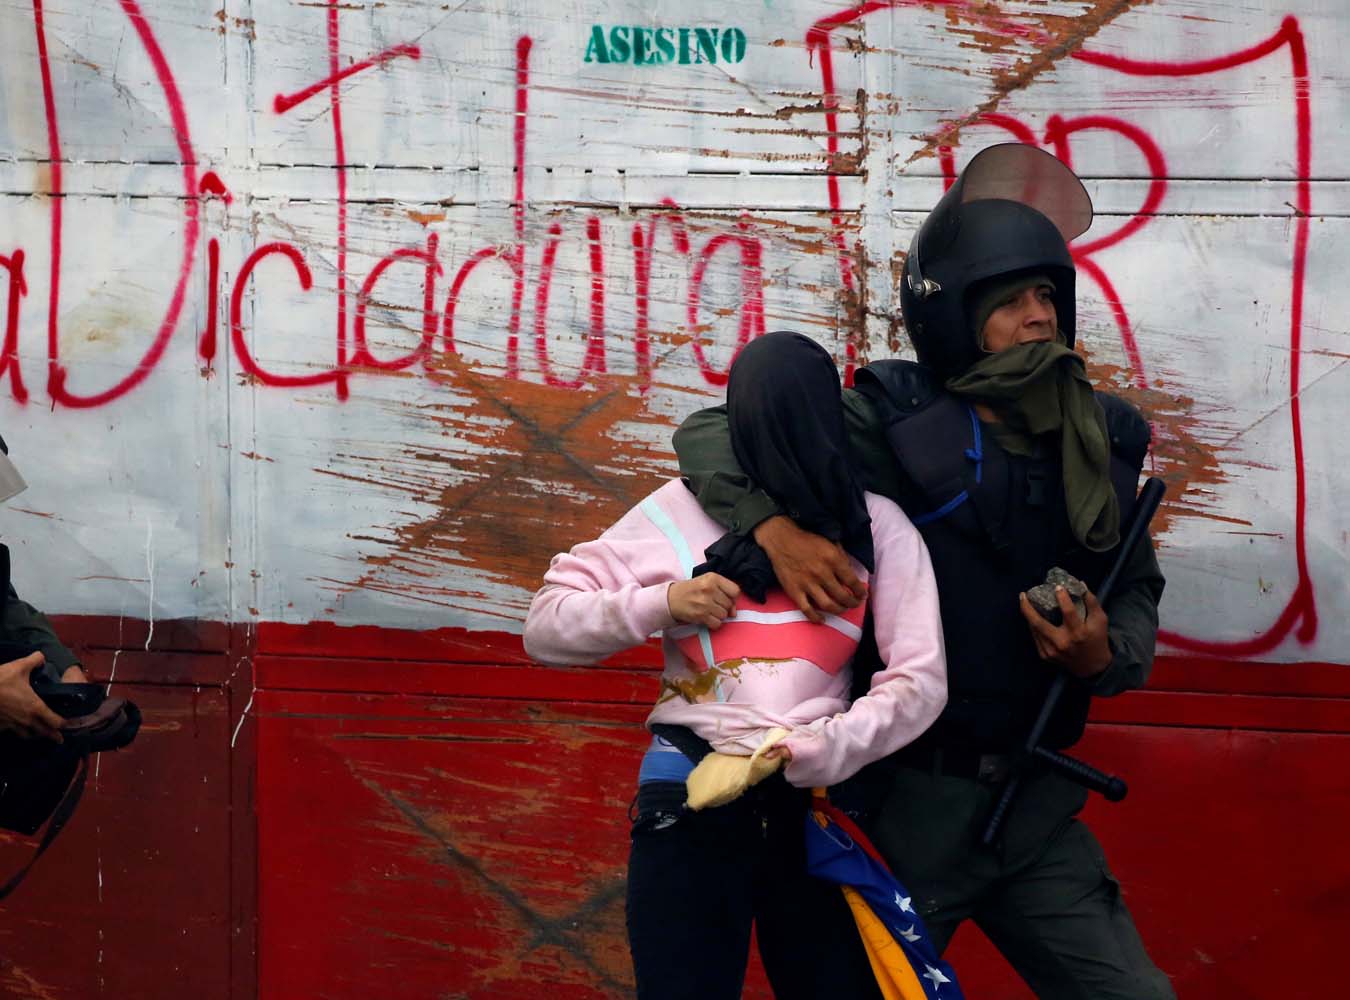 La represión como mecanismo de control de poder y sostén del régimen venezolano se ha consolidado (informe)